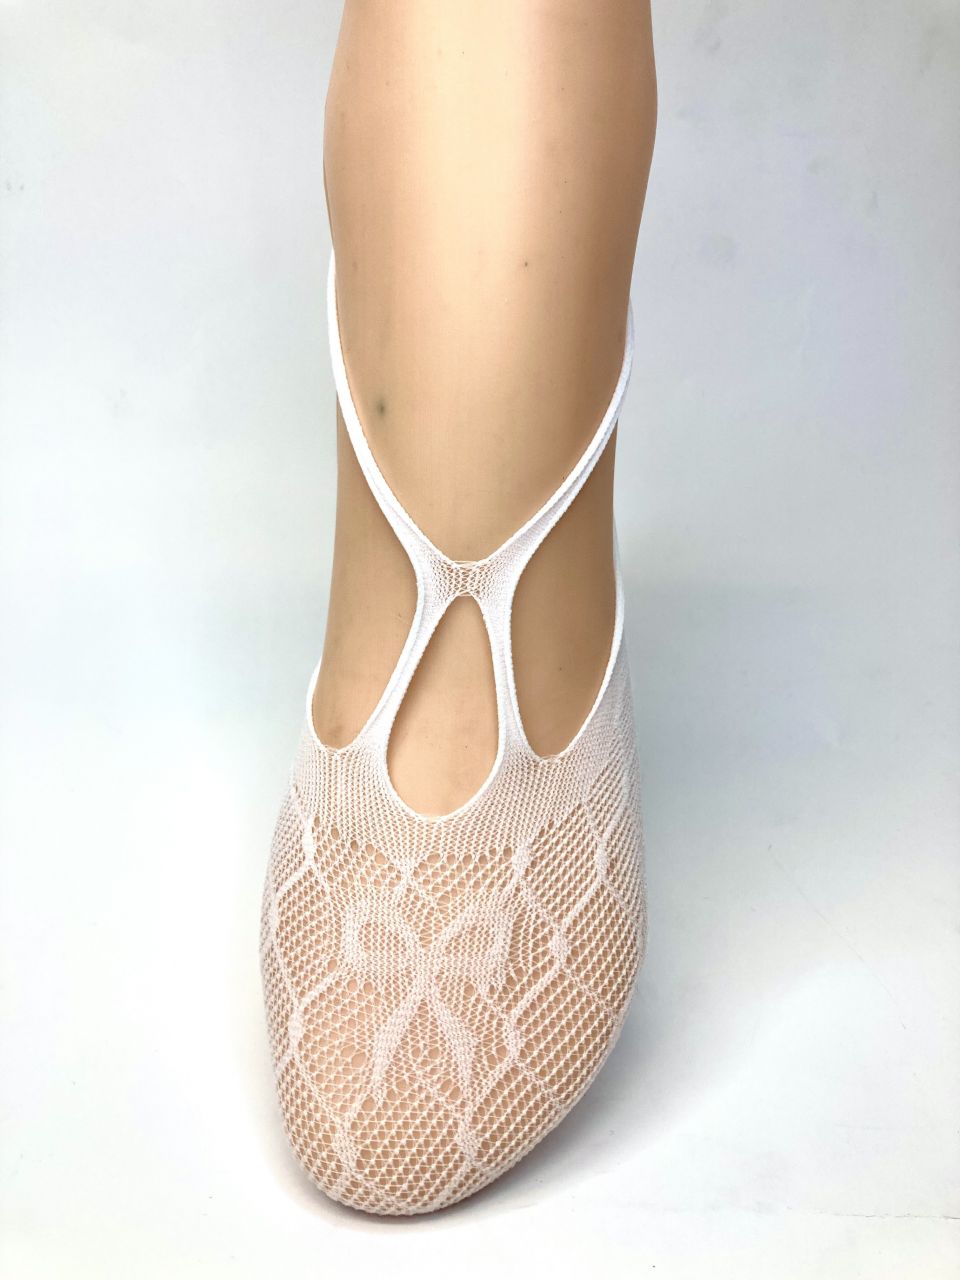 Trasparenze Babbuccia Graviola csipke balerina zokni